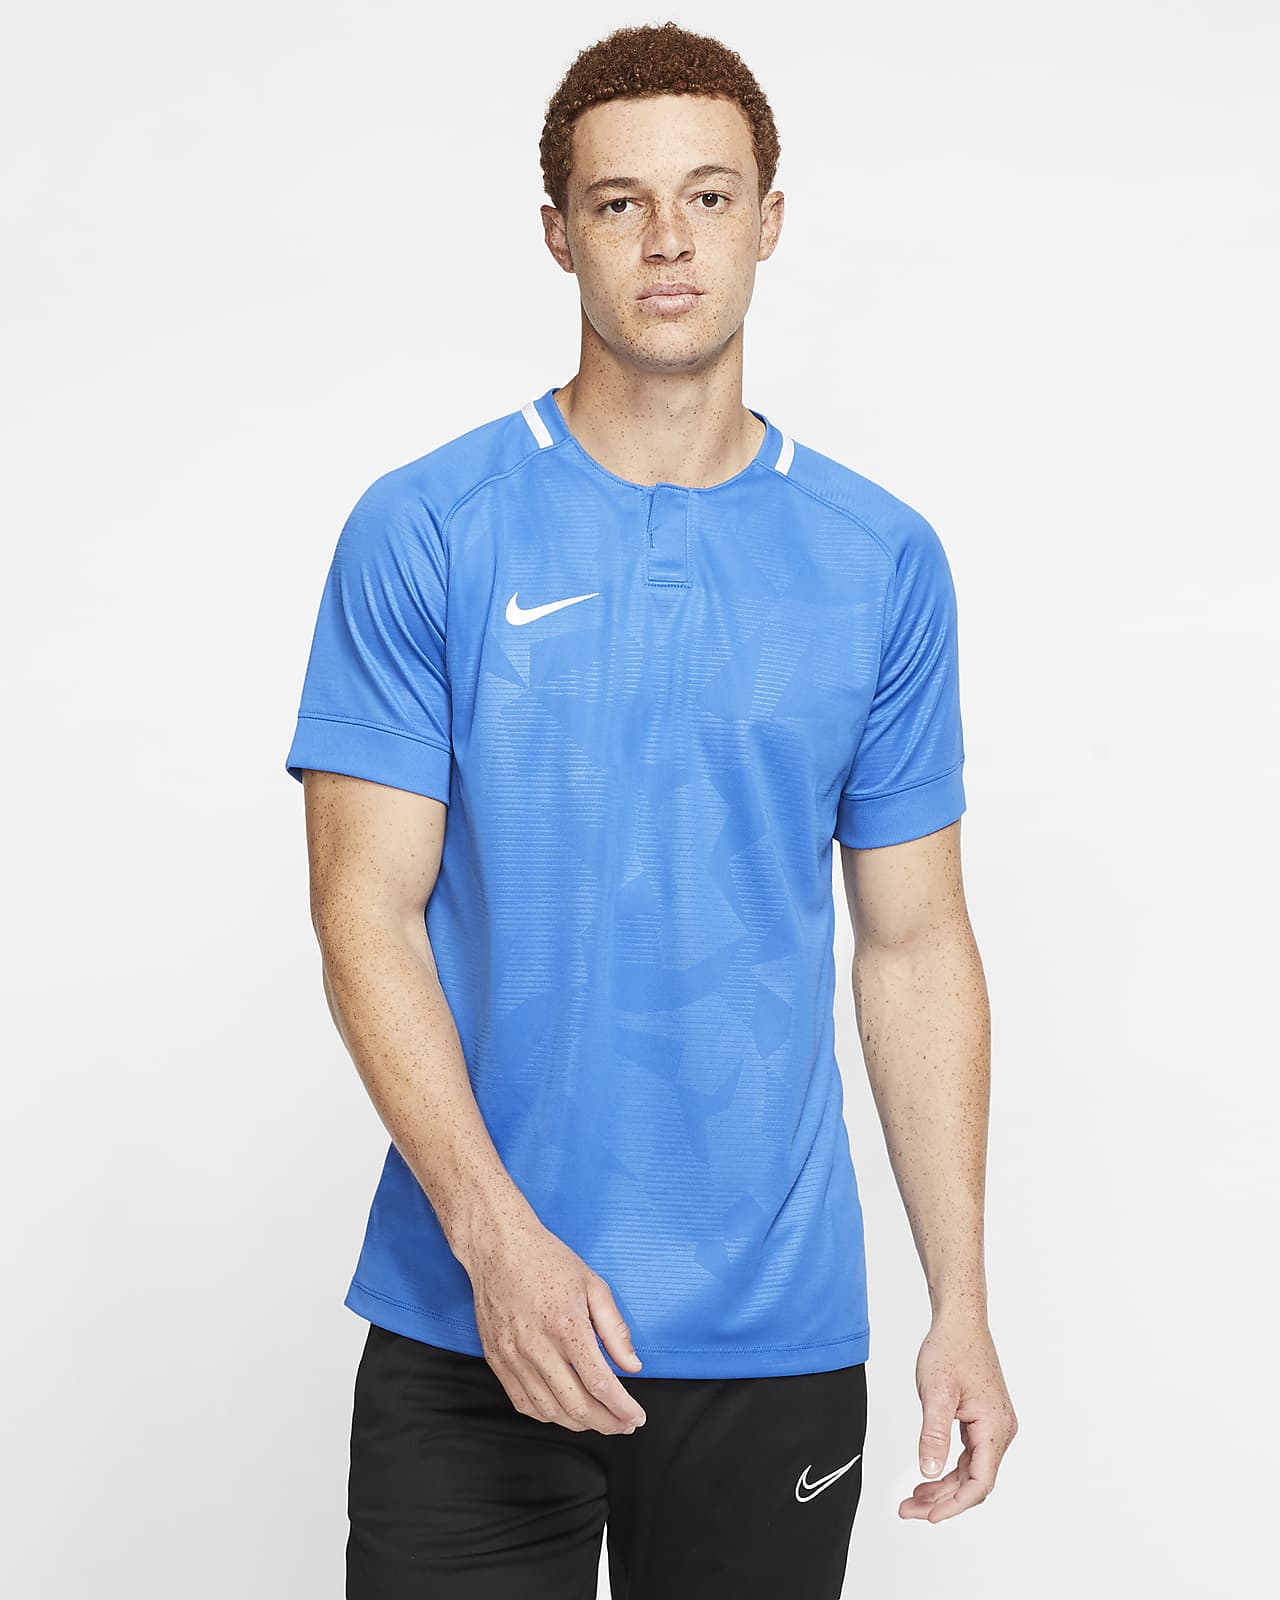 Nike公式 ナイキ Dri Fit チャレンジ 2 メンズ サッカーユニフォーム オンラインストア 通販サイト